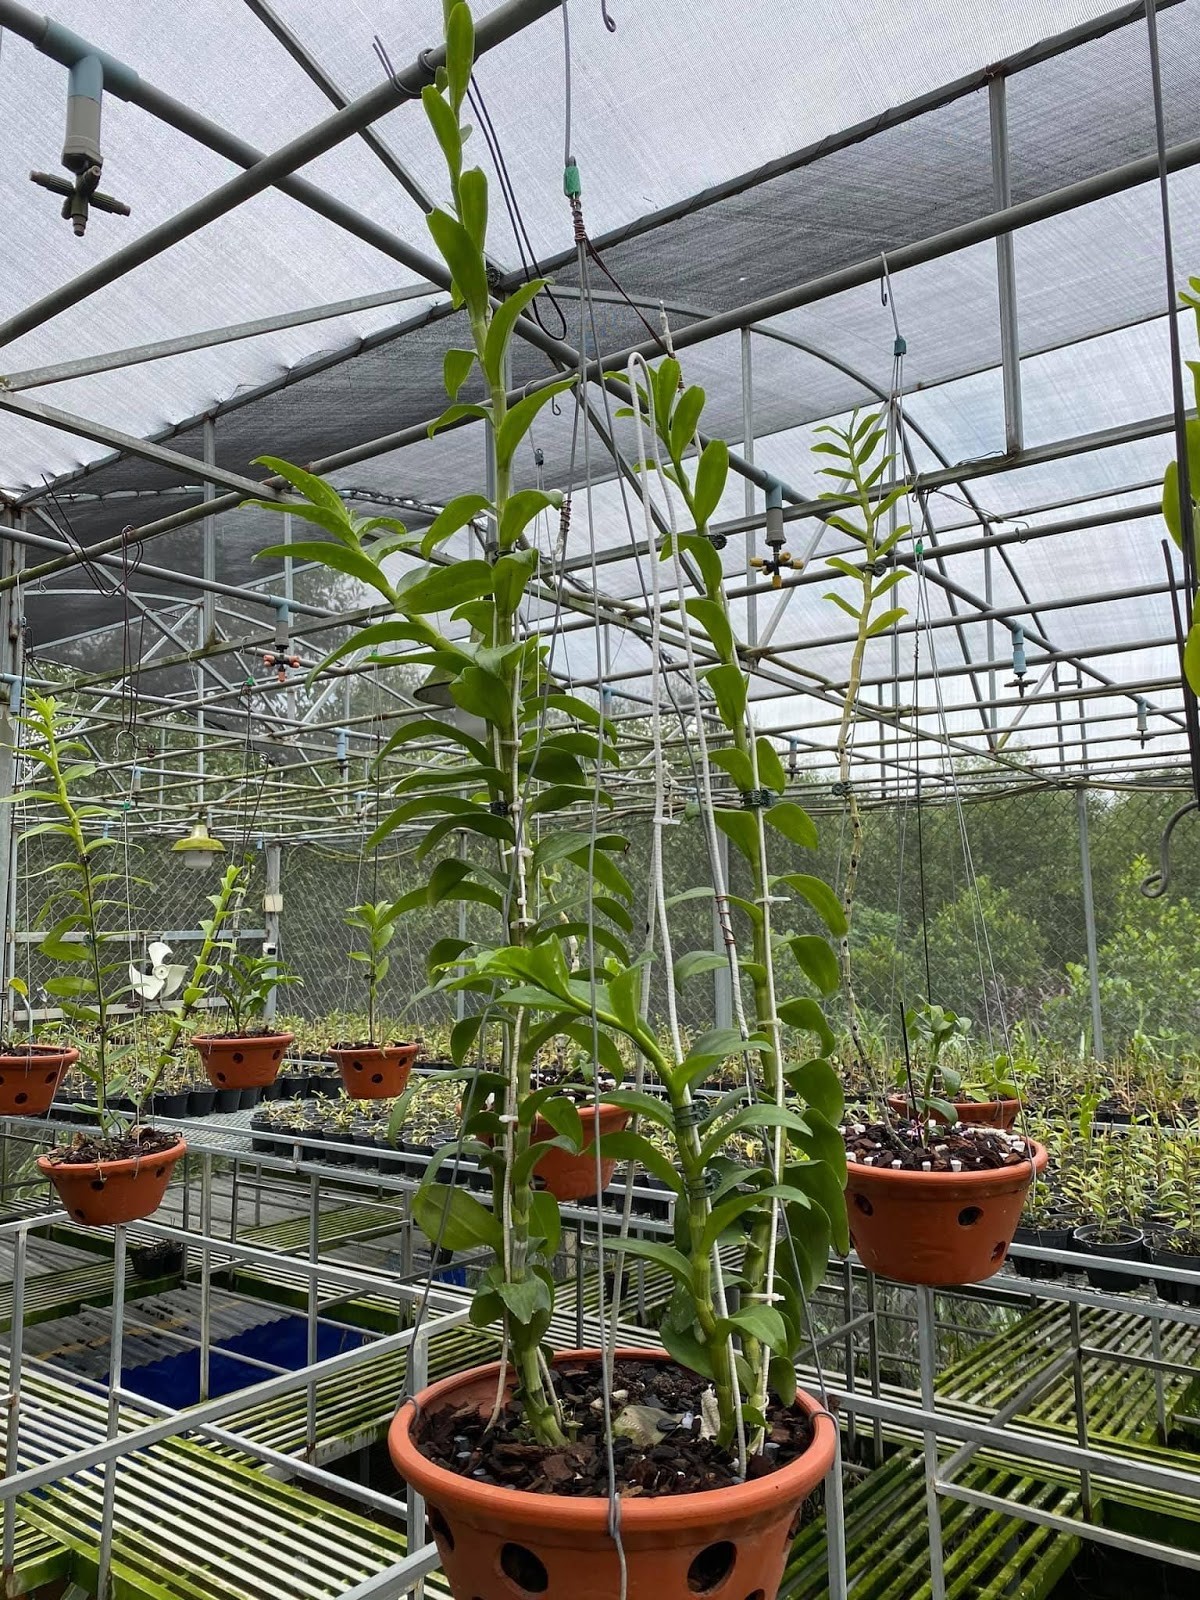  Vườn lan sở hữu hàng trăm giống lan quý của anh Hòa tại Vĩnh Cửu, Đồng Nai 